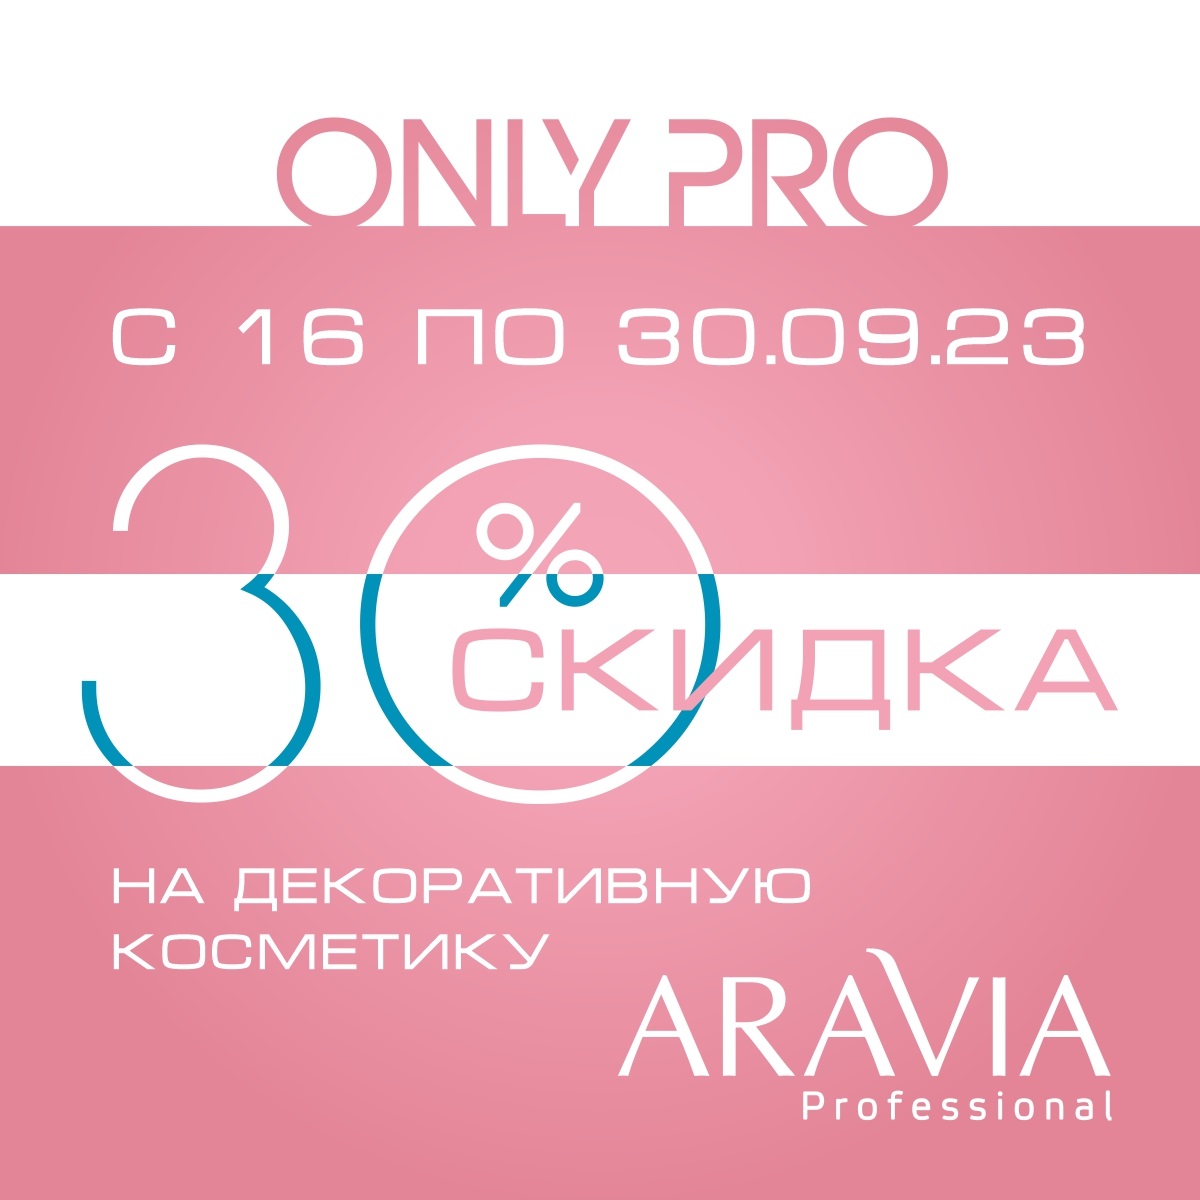 Акция - 30% на декоративную косметику от ARAVIA 